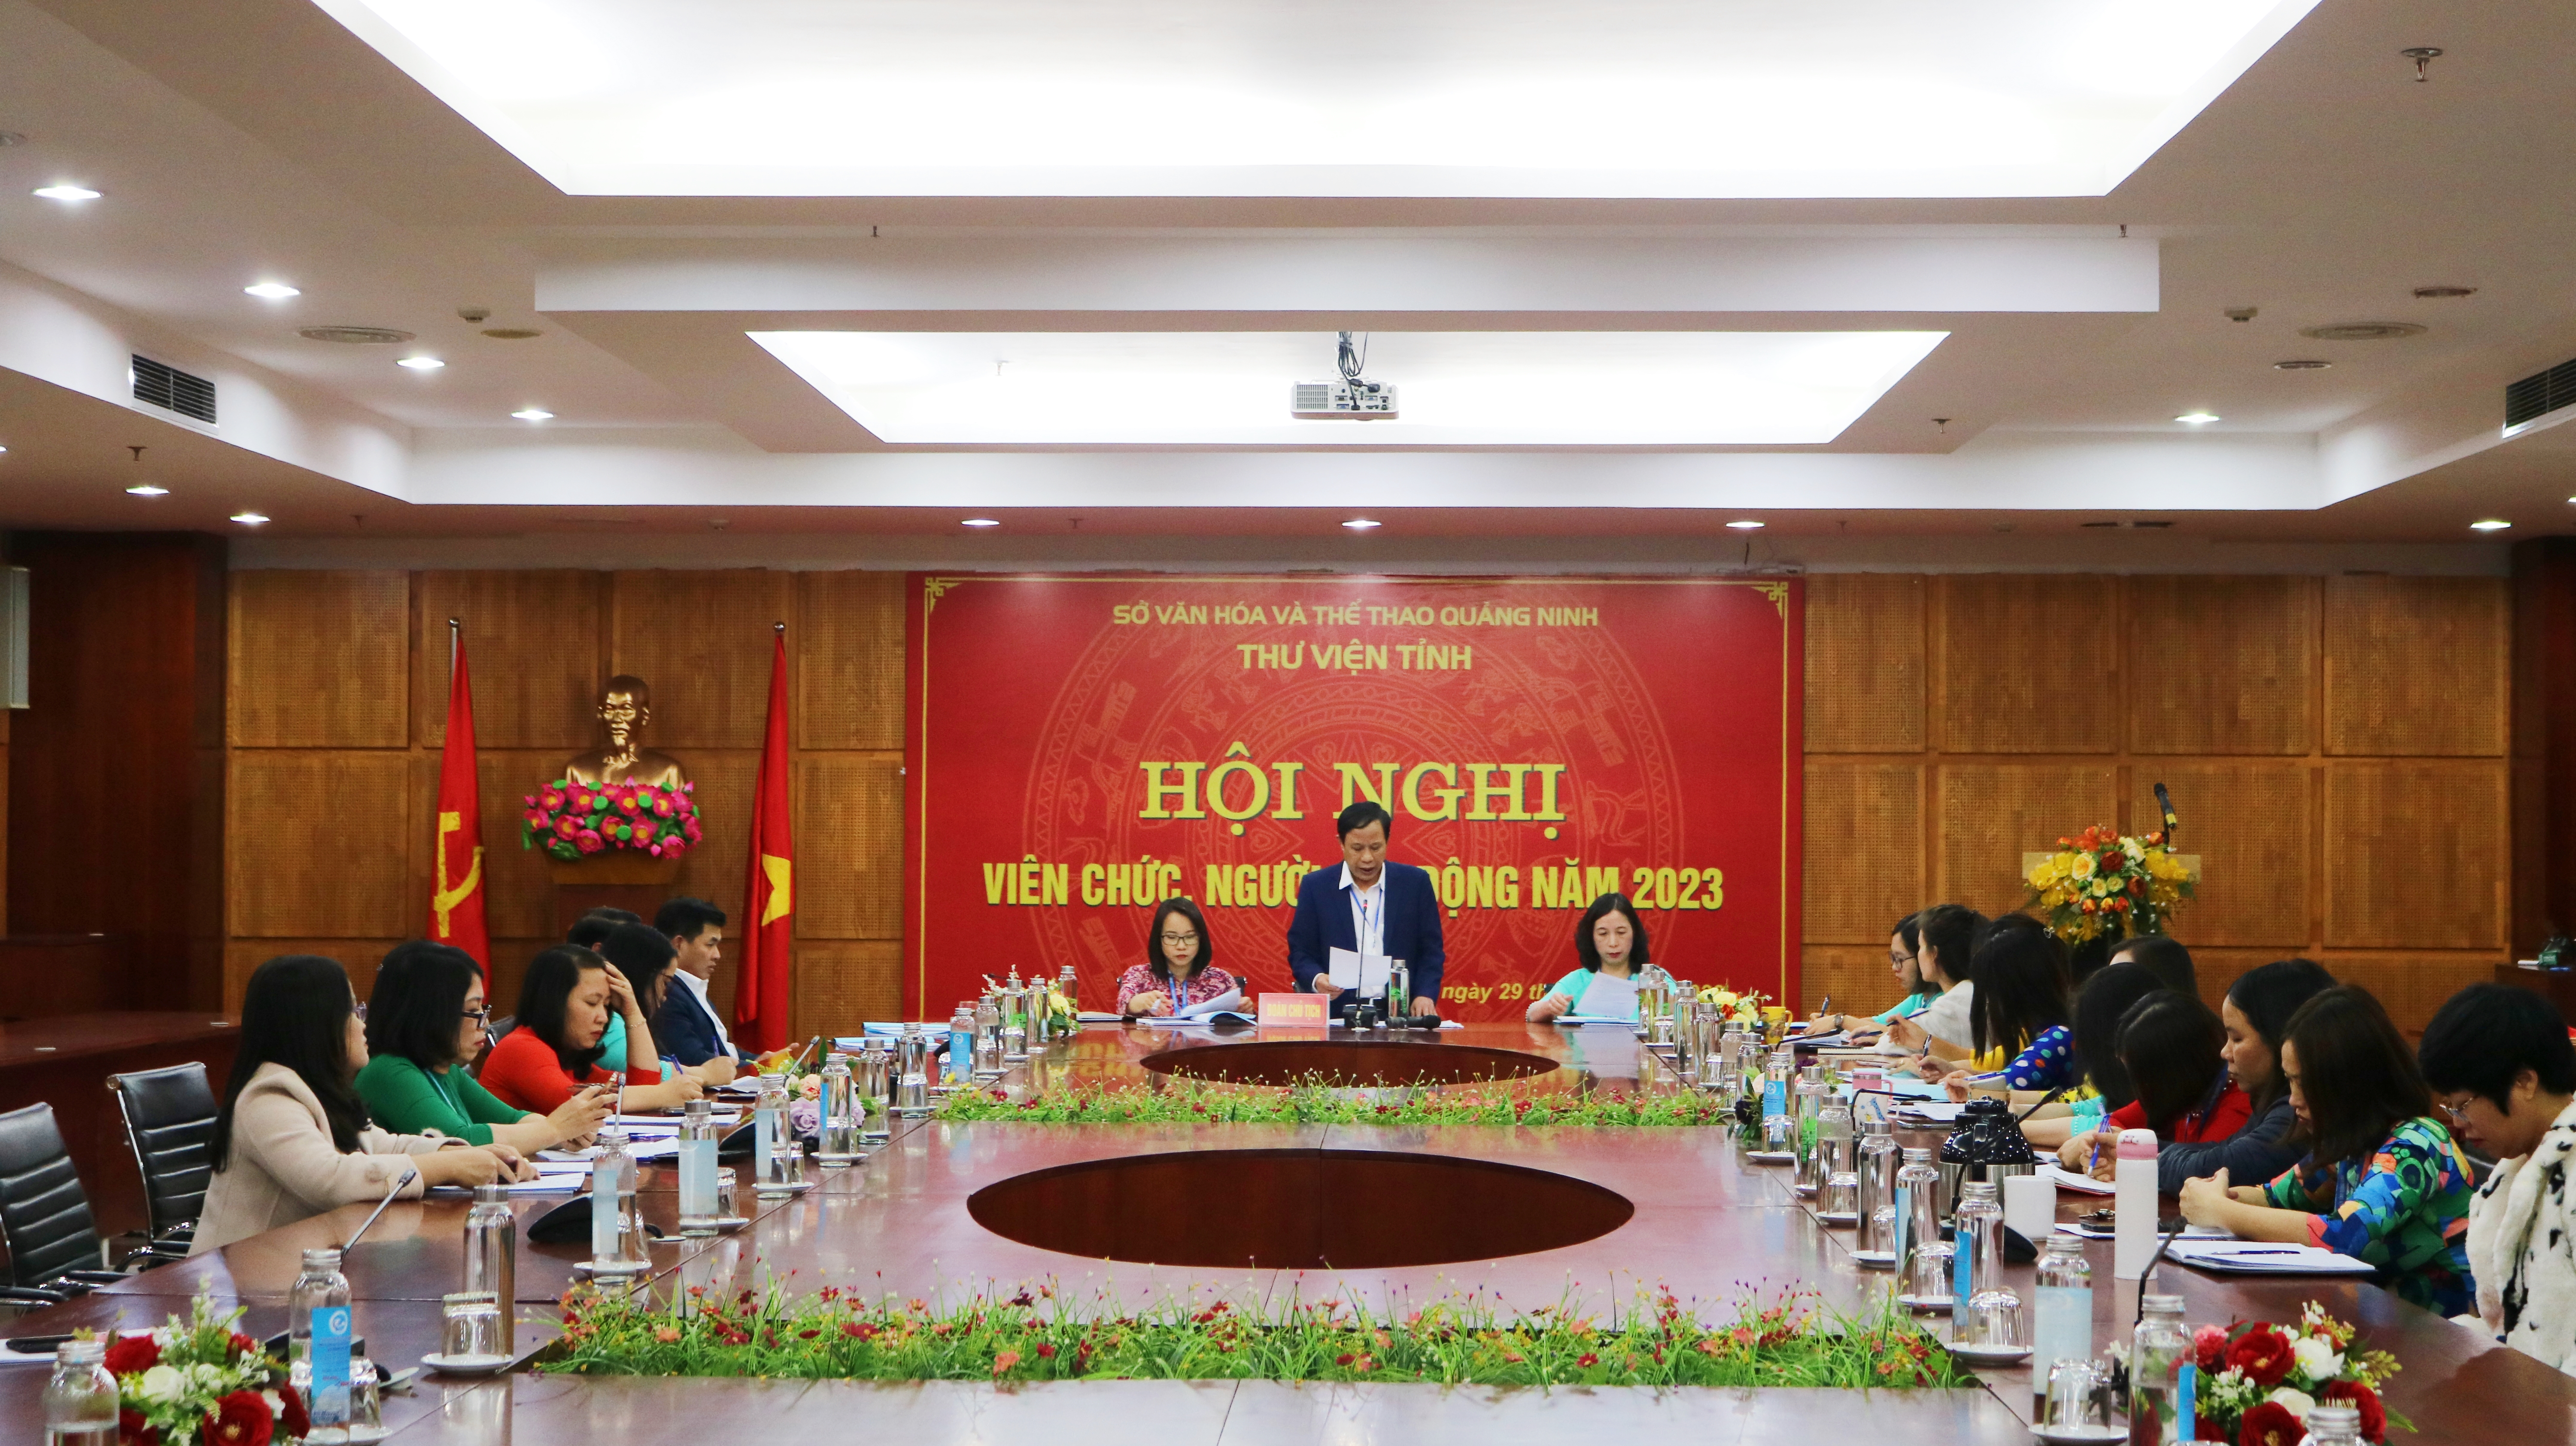 Thư viện tỉnh Quảng Ninh tổ chức Hội nghị viên chức, người lao động năm 2023